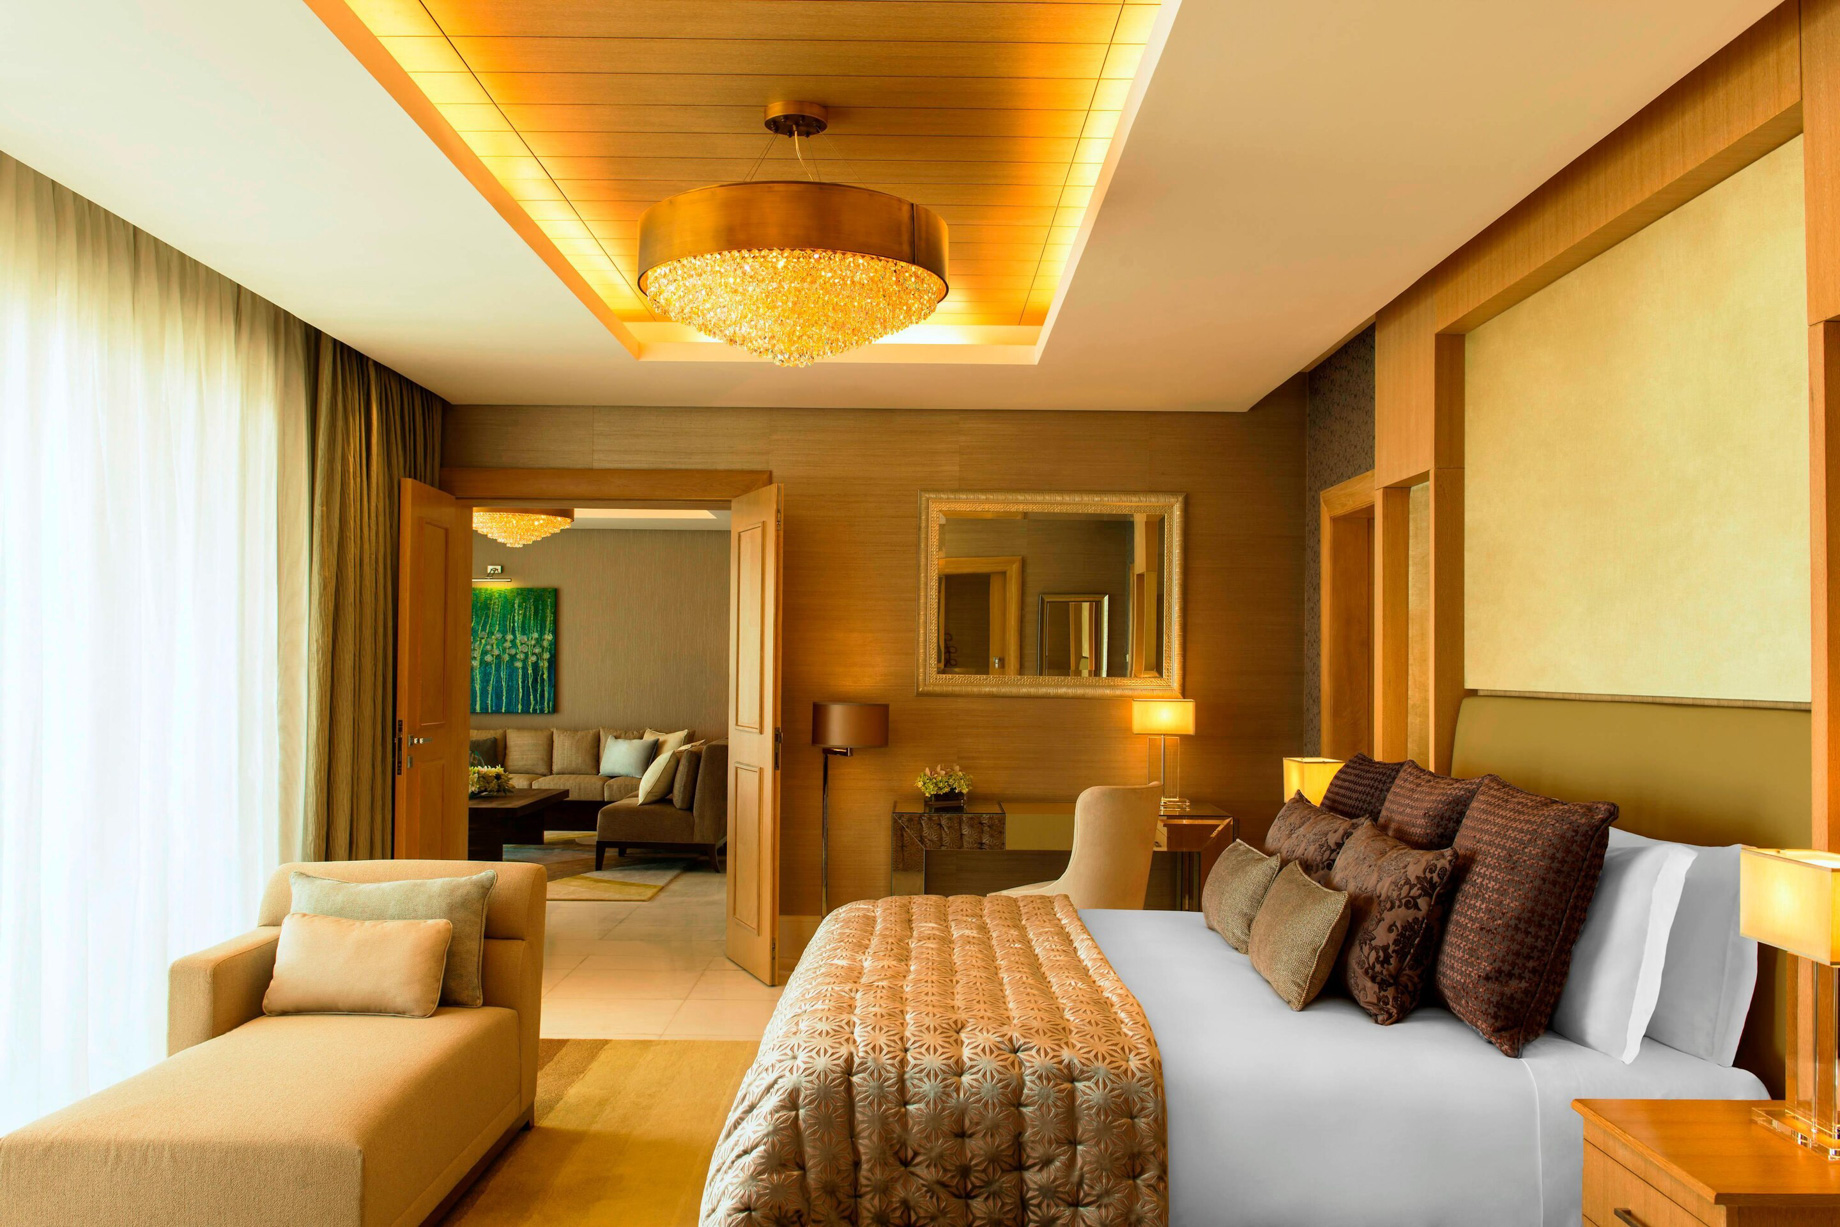 The St. Regis Saadiyat Island Resort – Abu Dhabi, UAE – Royal Suite Adjacent Bedroom